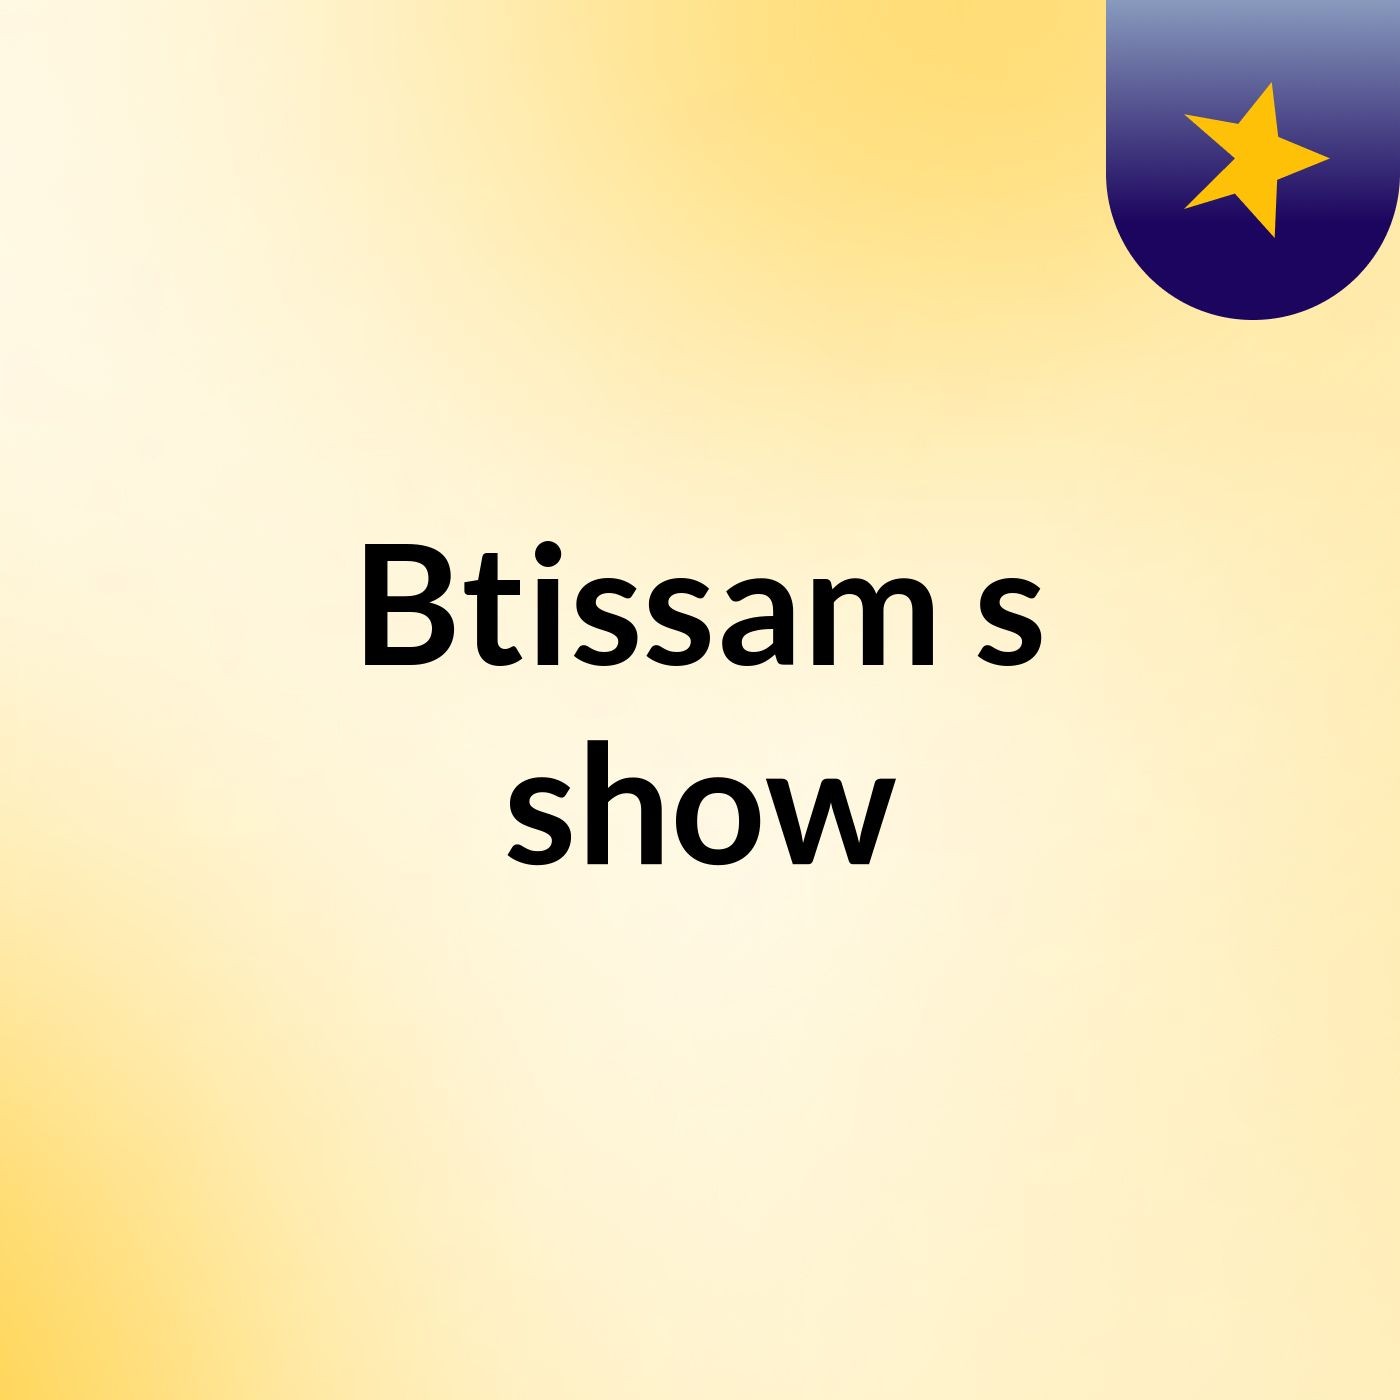 Btissam's show